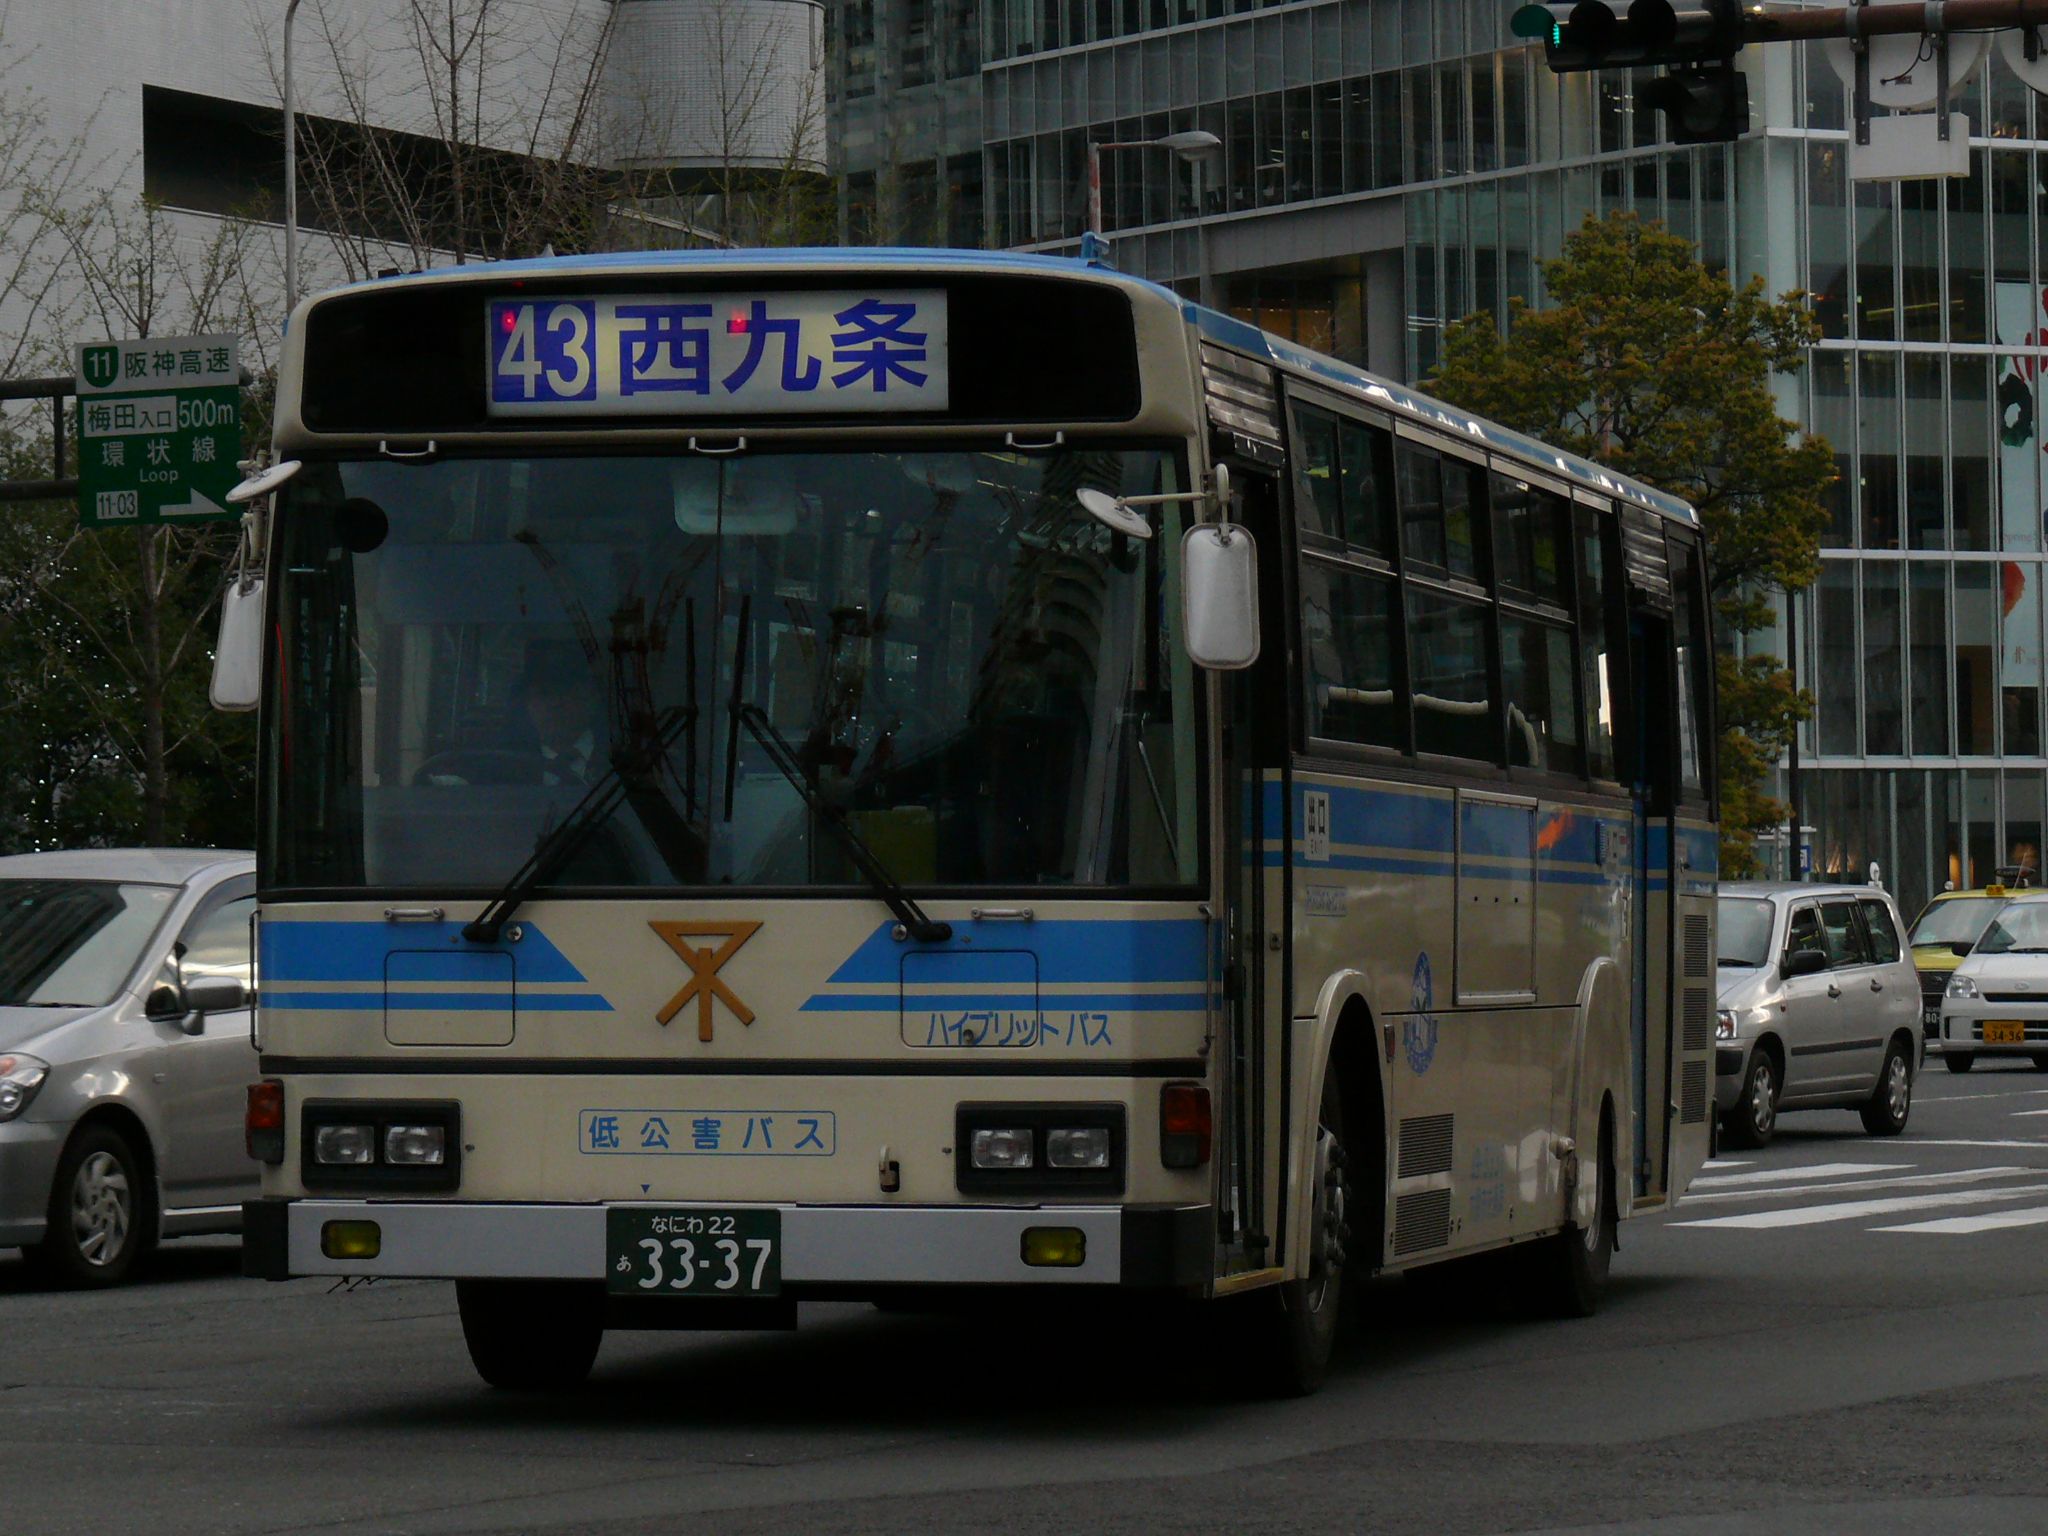 49 3337 大阪シティバス Wiki